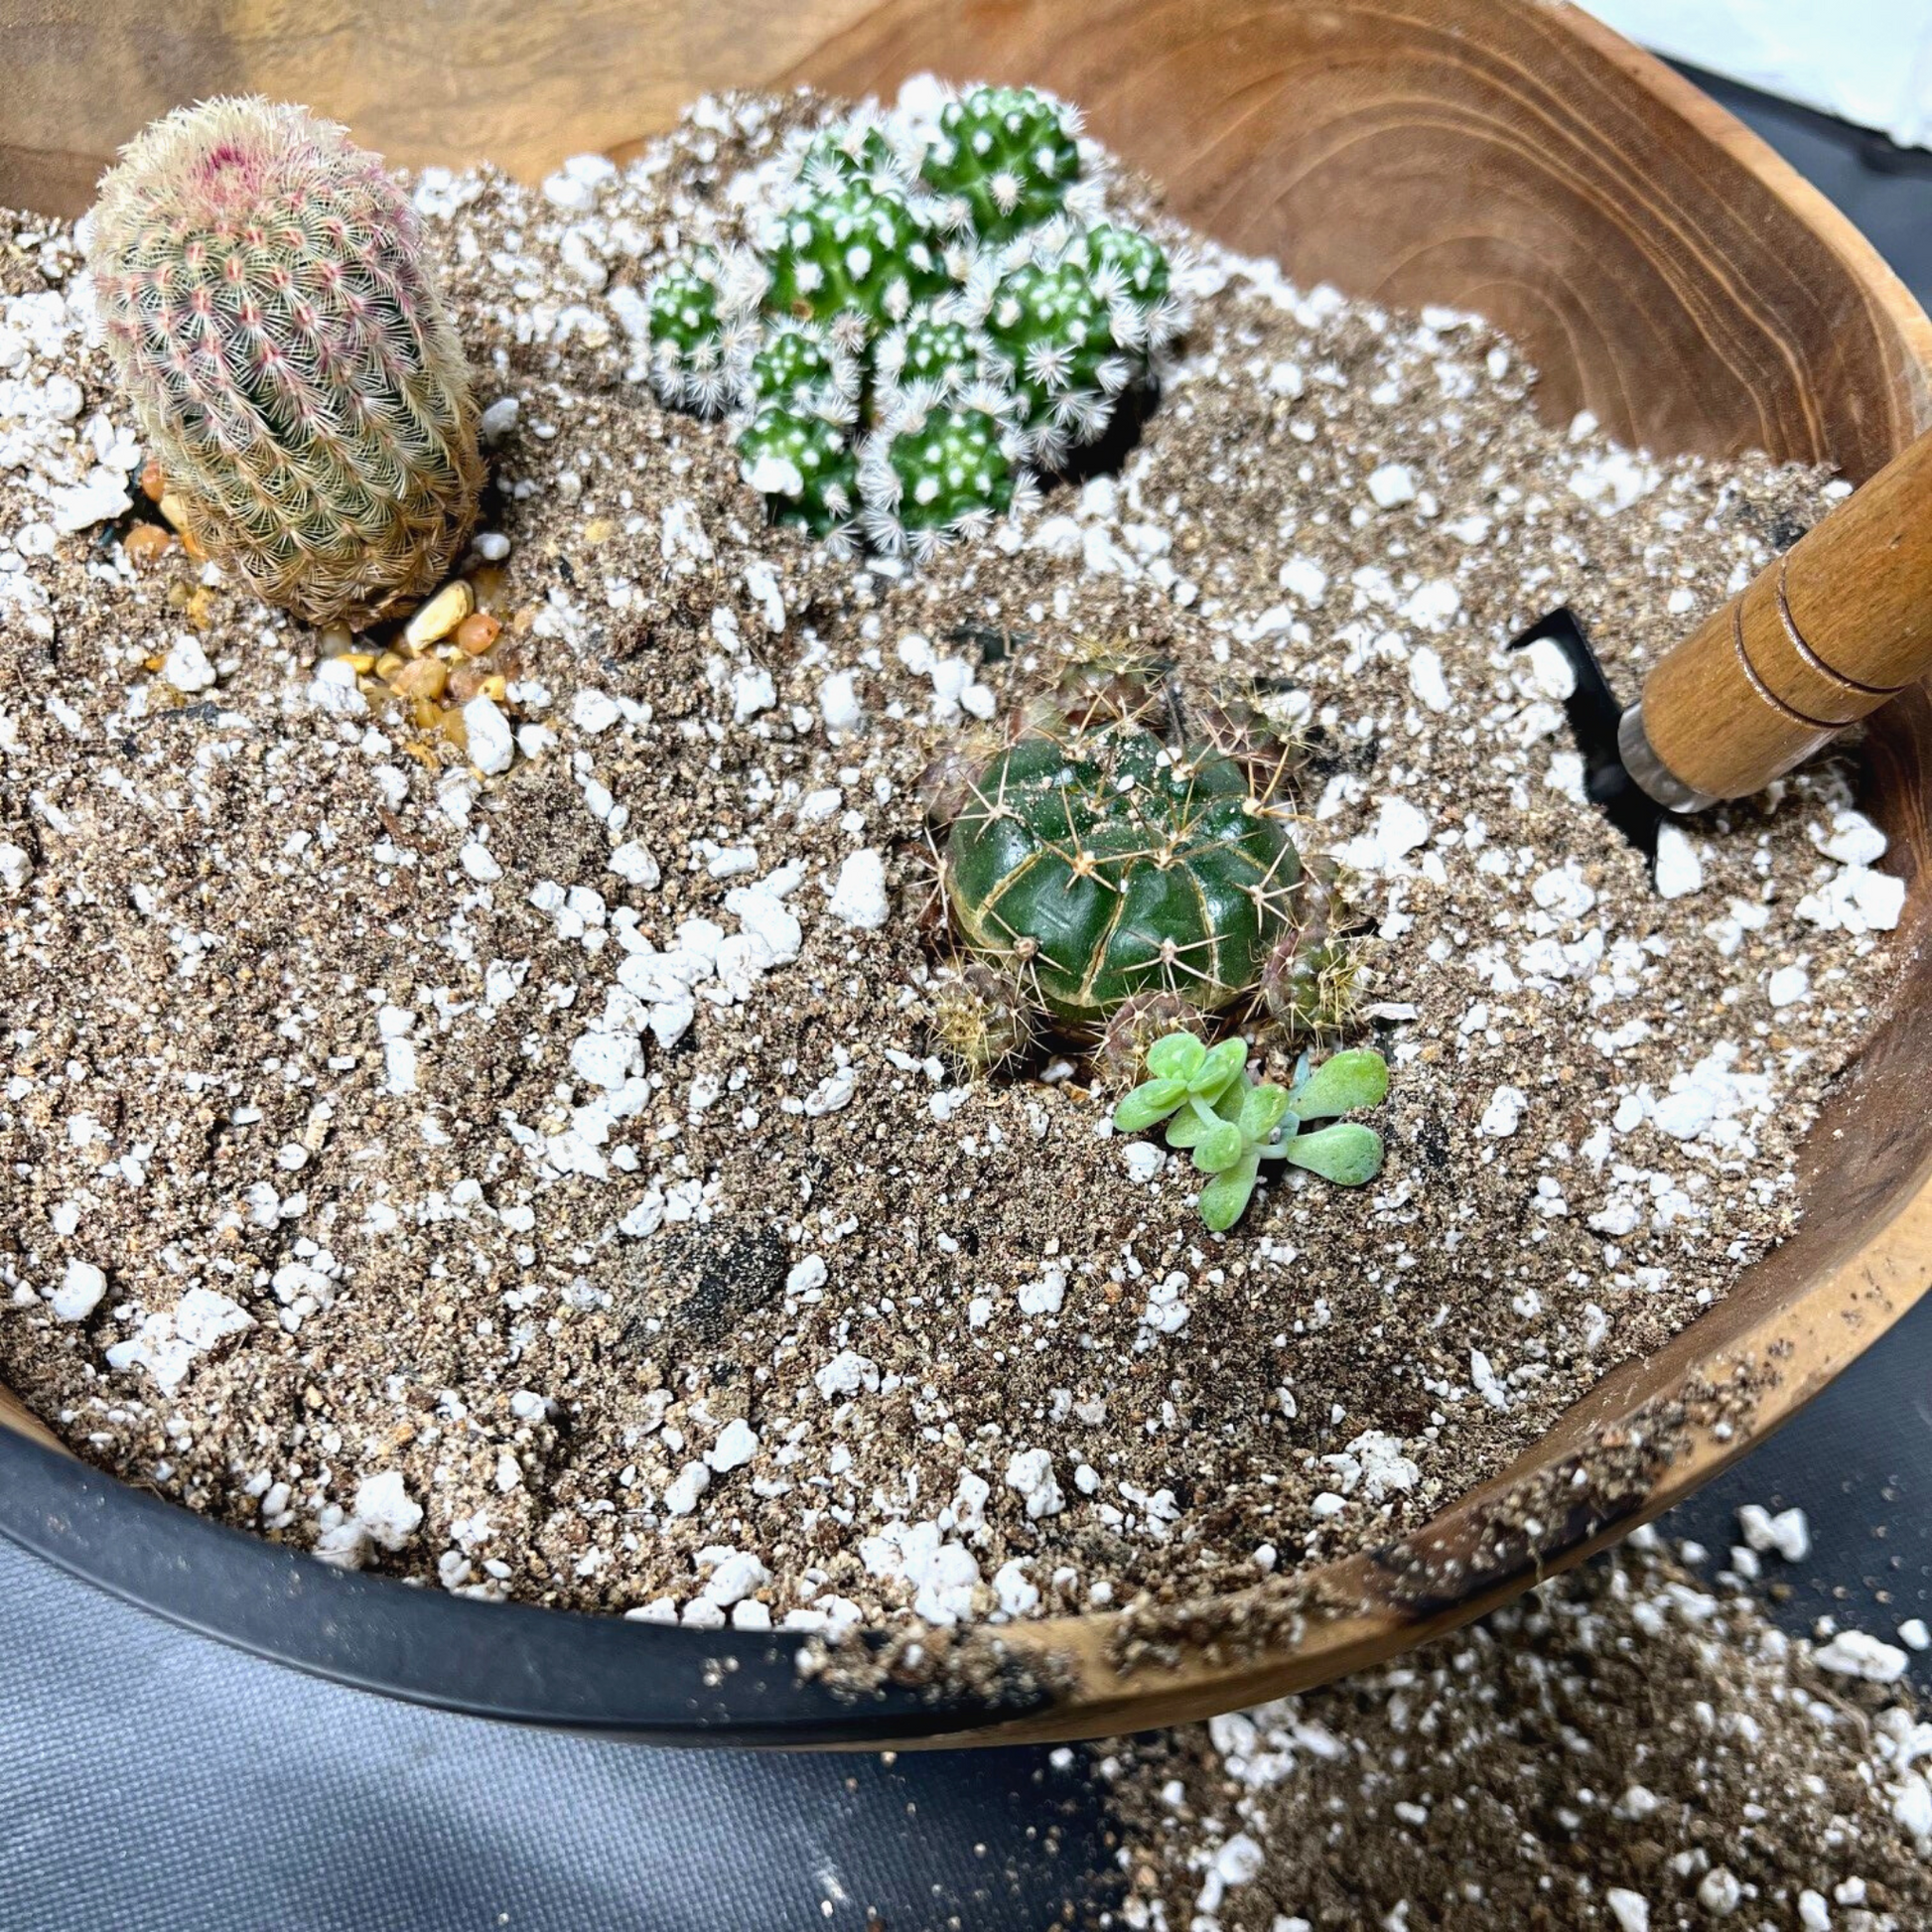 A Echinocereus Rigidissimus cactus and various other cacti in Birdy's Plants Premium Cactus + Succulent Soil Mix.